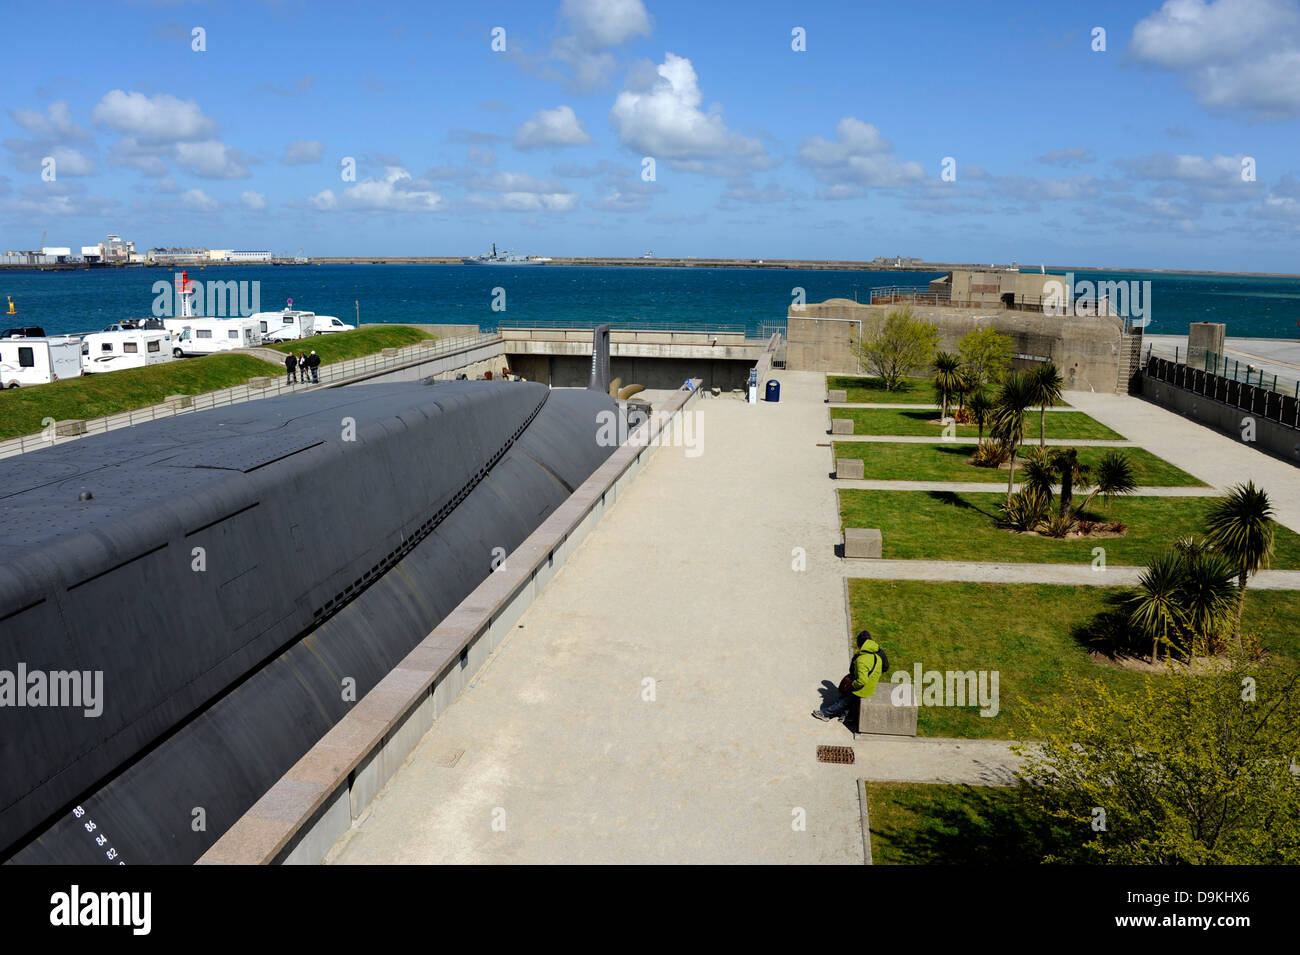 Le Redoutable, sous-marin nucléaire,la cité de la mer Cherbourg,musée,port,,Manche,Basse-Normandie,Cotentin,Fr Banque D'Images